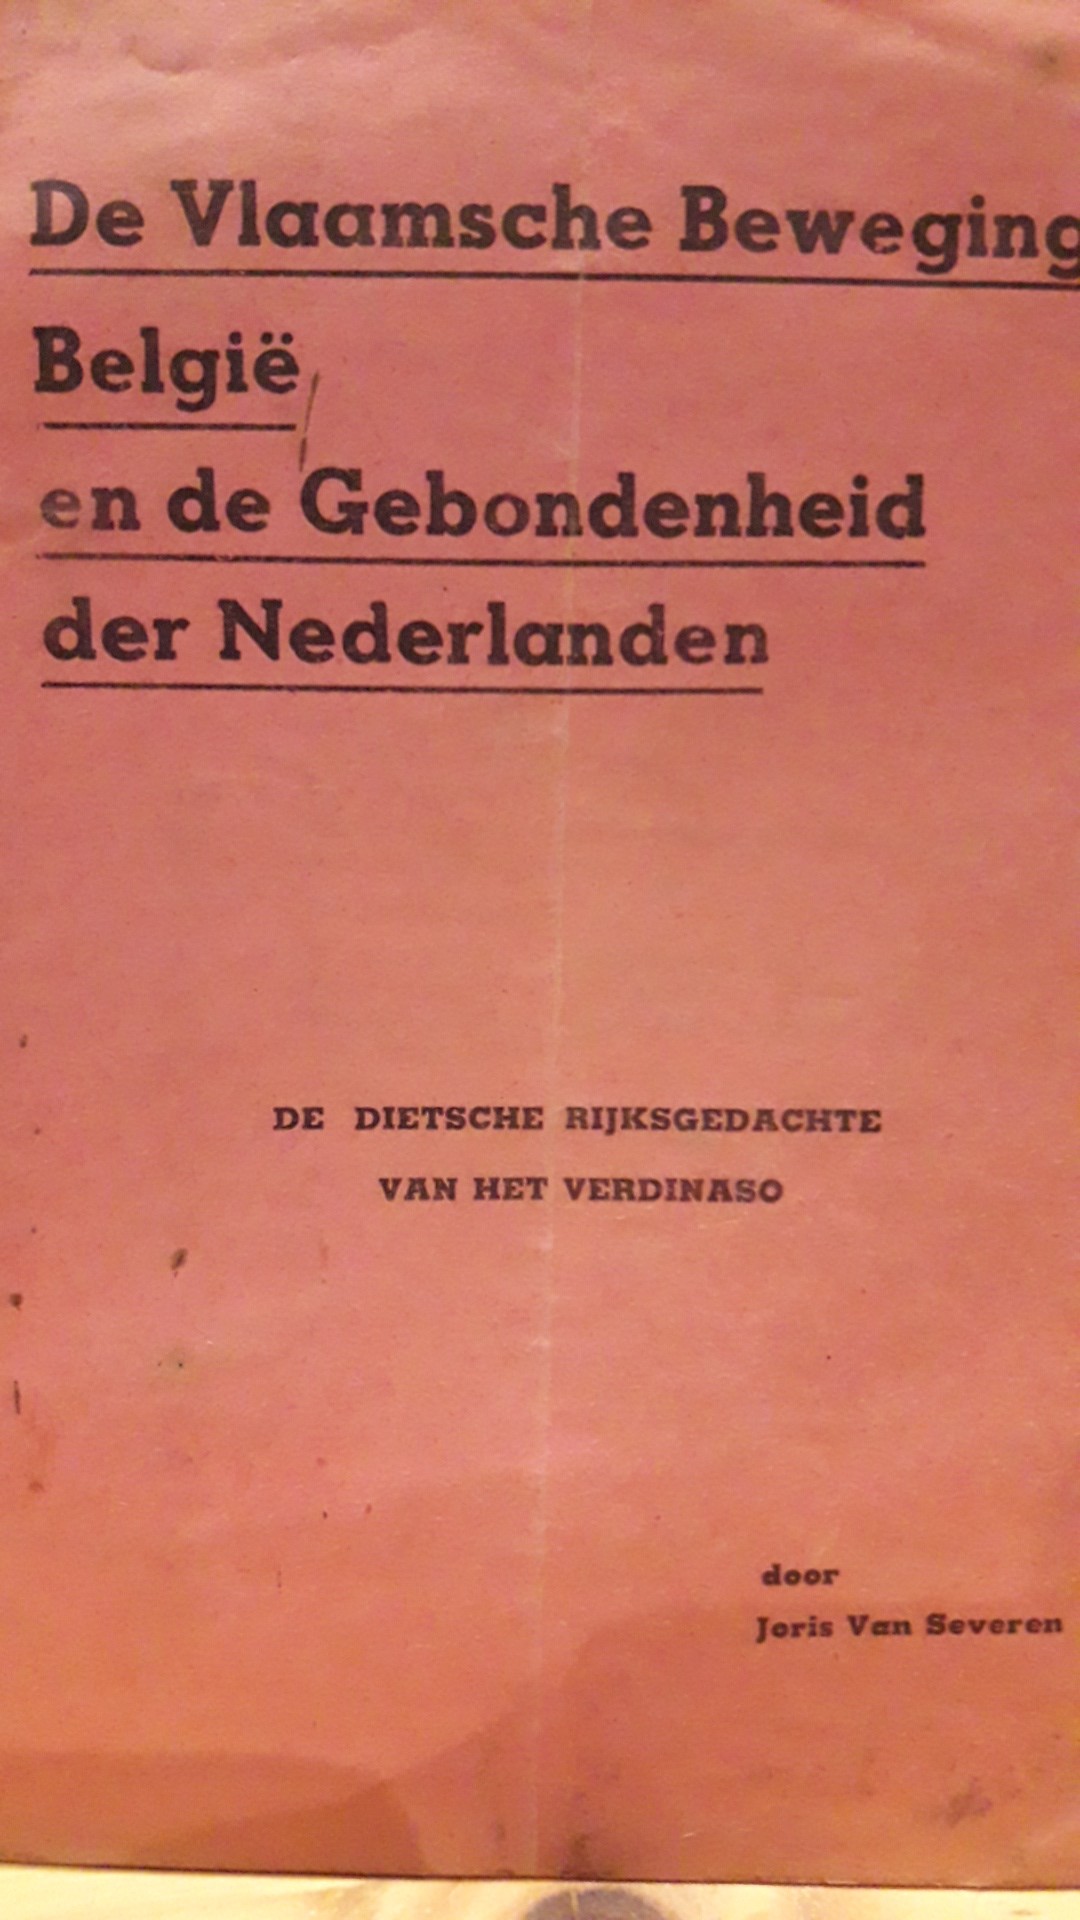 Joris Van Severen / VERDINASO brochure - De Vlaamsche beweging  genbodenheid der Nederlanden- 1936